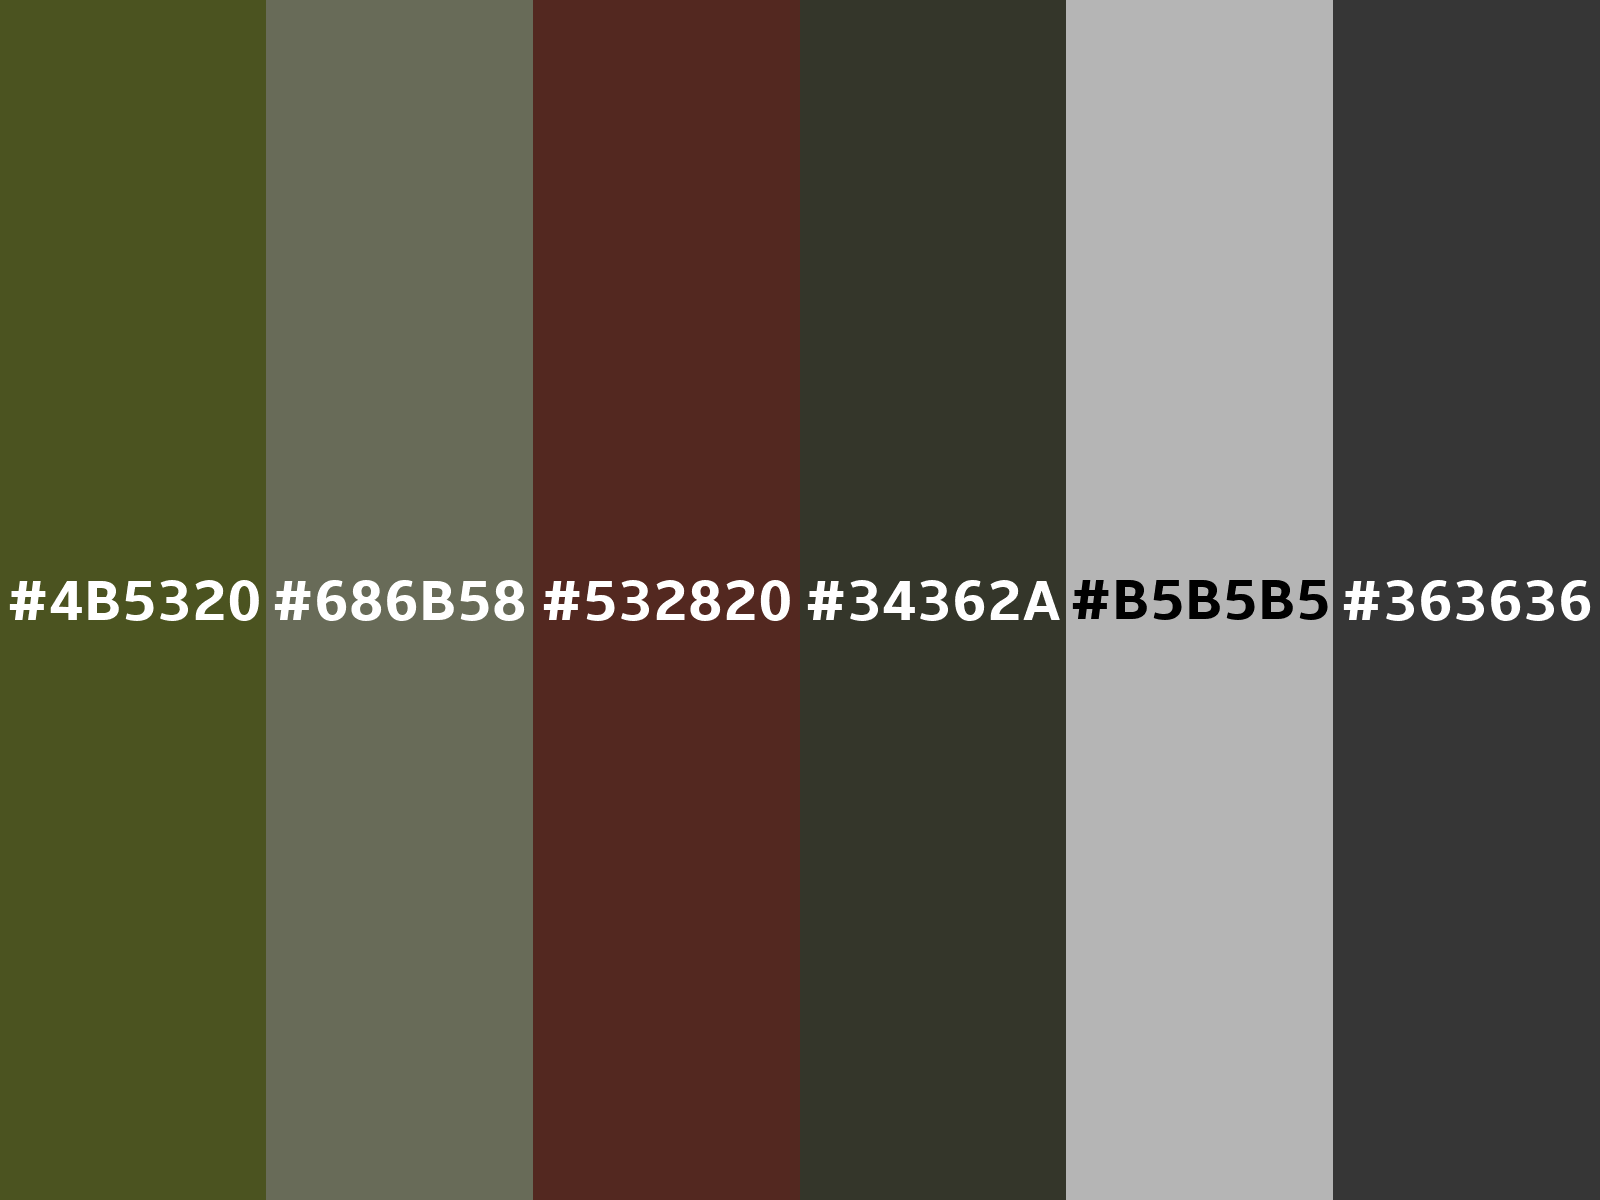 CIL army fatigue green - #7e896c color code hexadecimal - 30GY 23/167